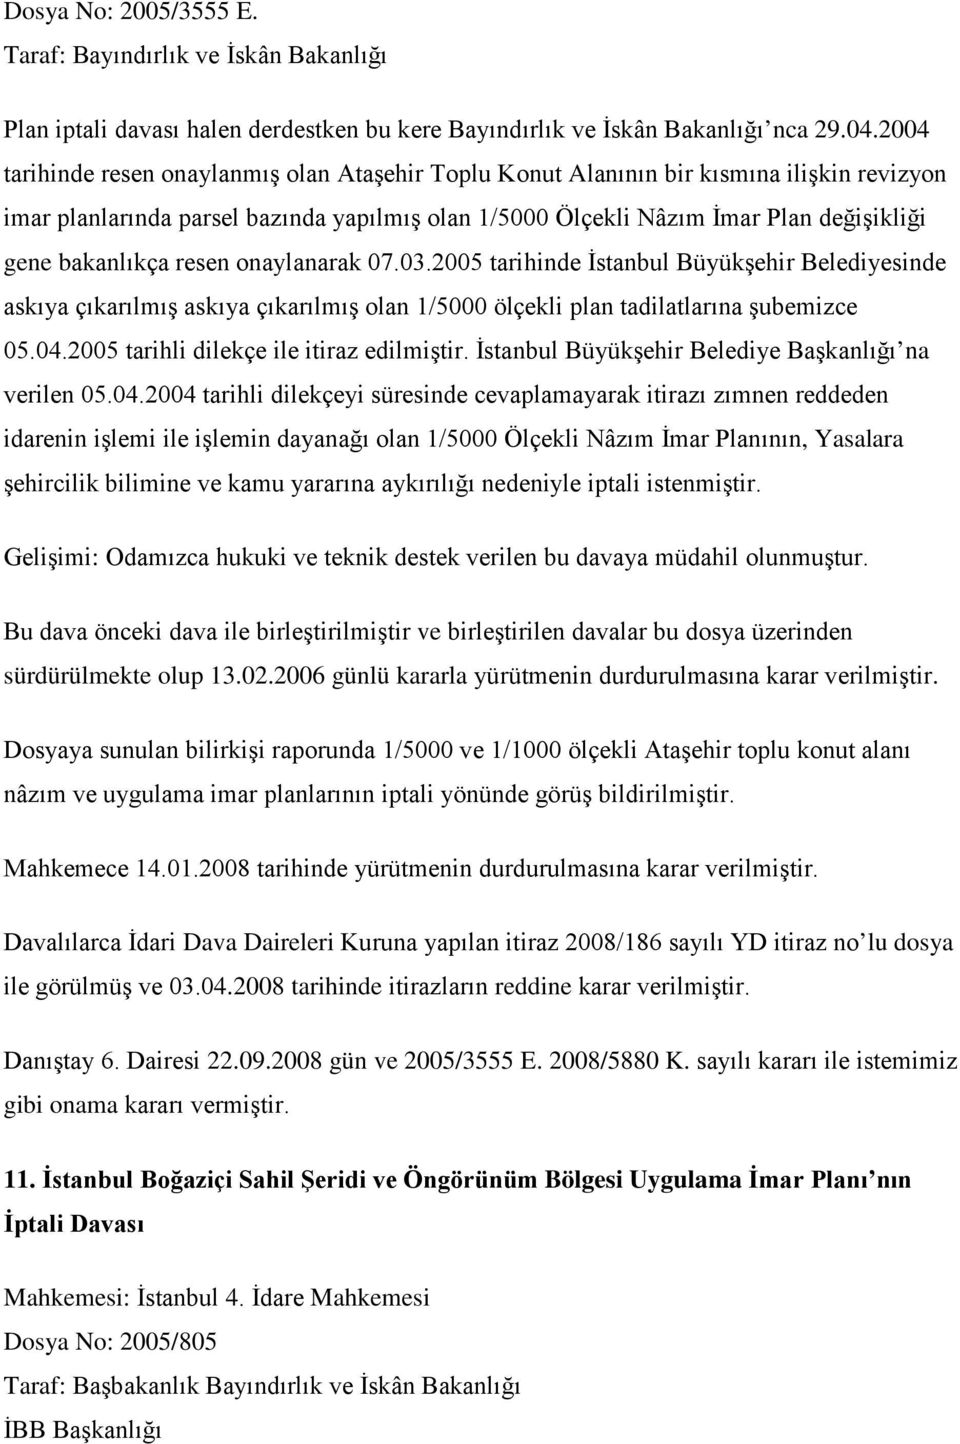 bakanlıkça resen onaylanarak 07.03.2005 tarihinde İstanbul Büyükşehir Belediyesinde askıya çıkarılmış askıya çıkarılmış olan 1/5000 ölçekli plan tadilatlarına şubemizce 05.04.